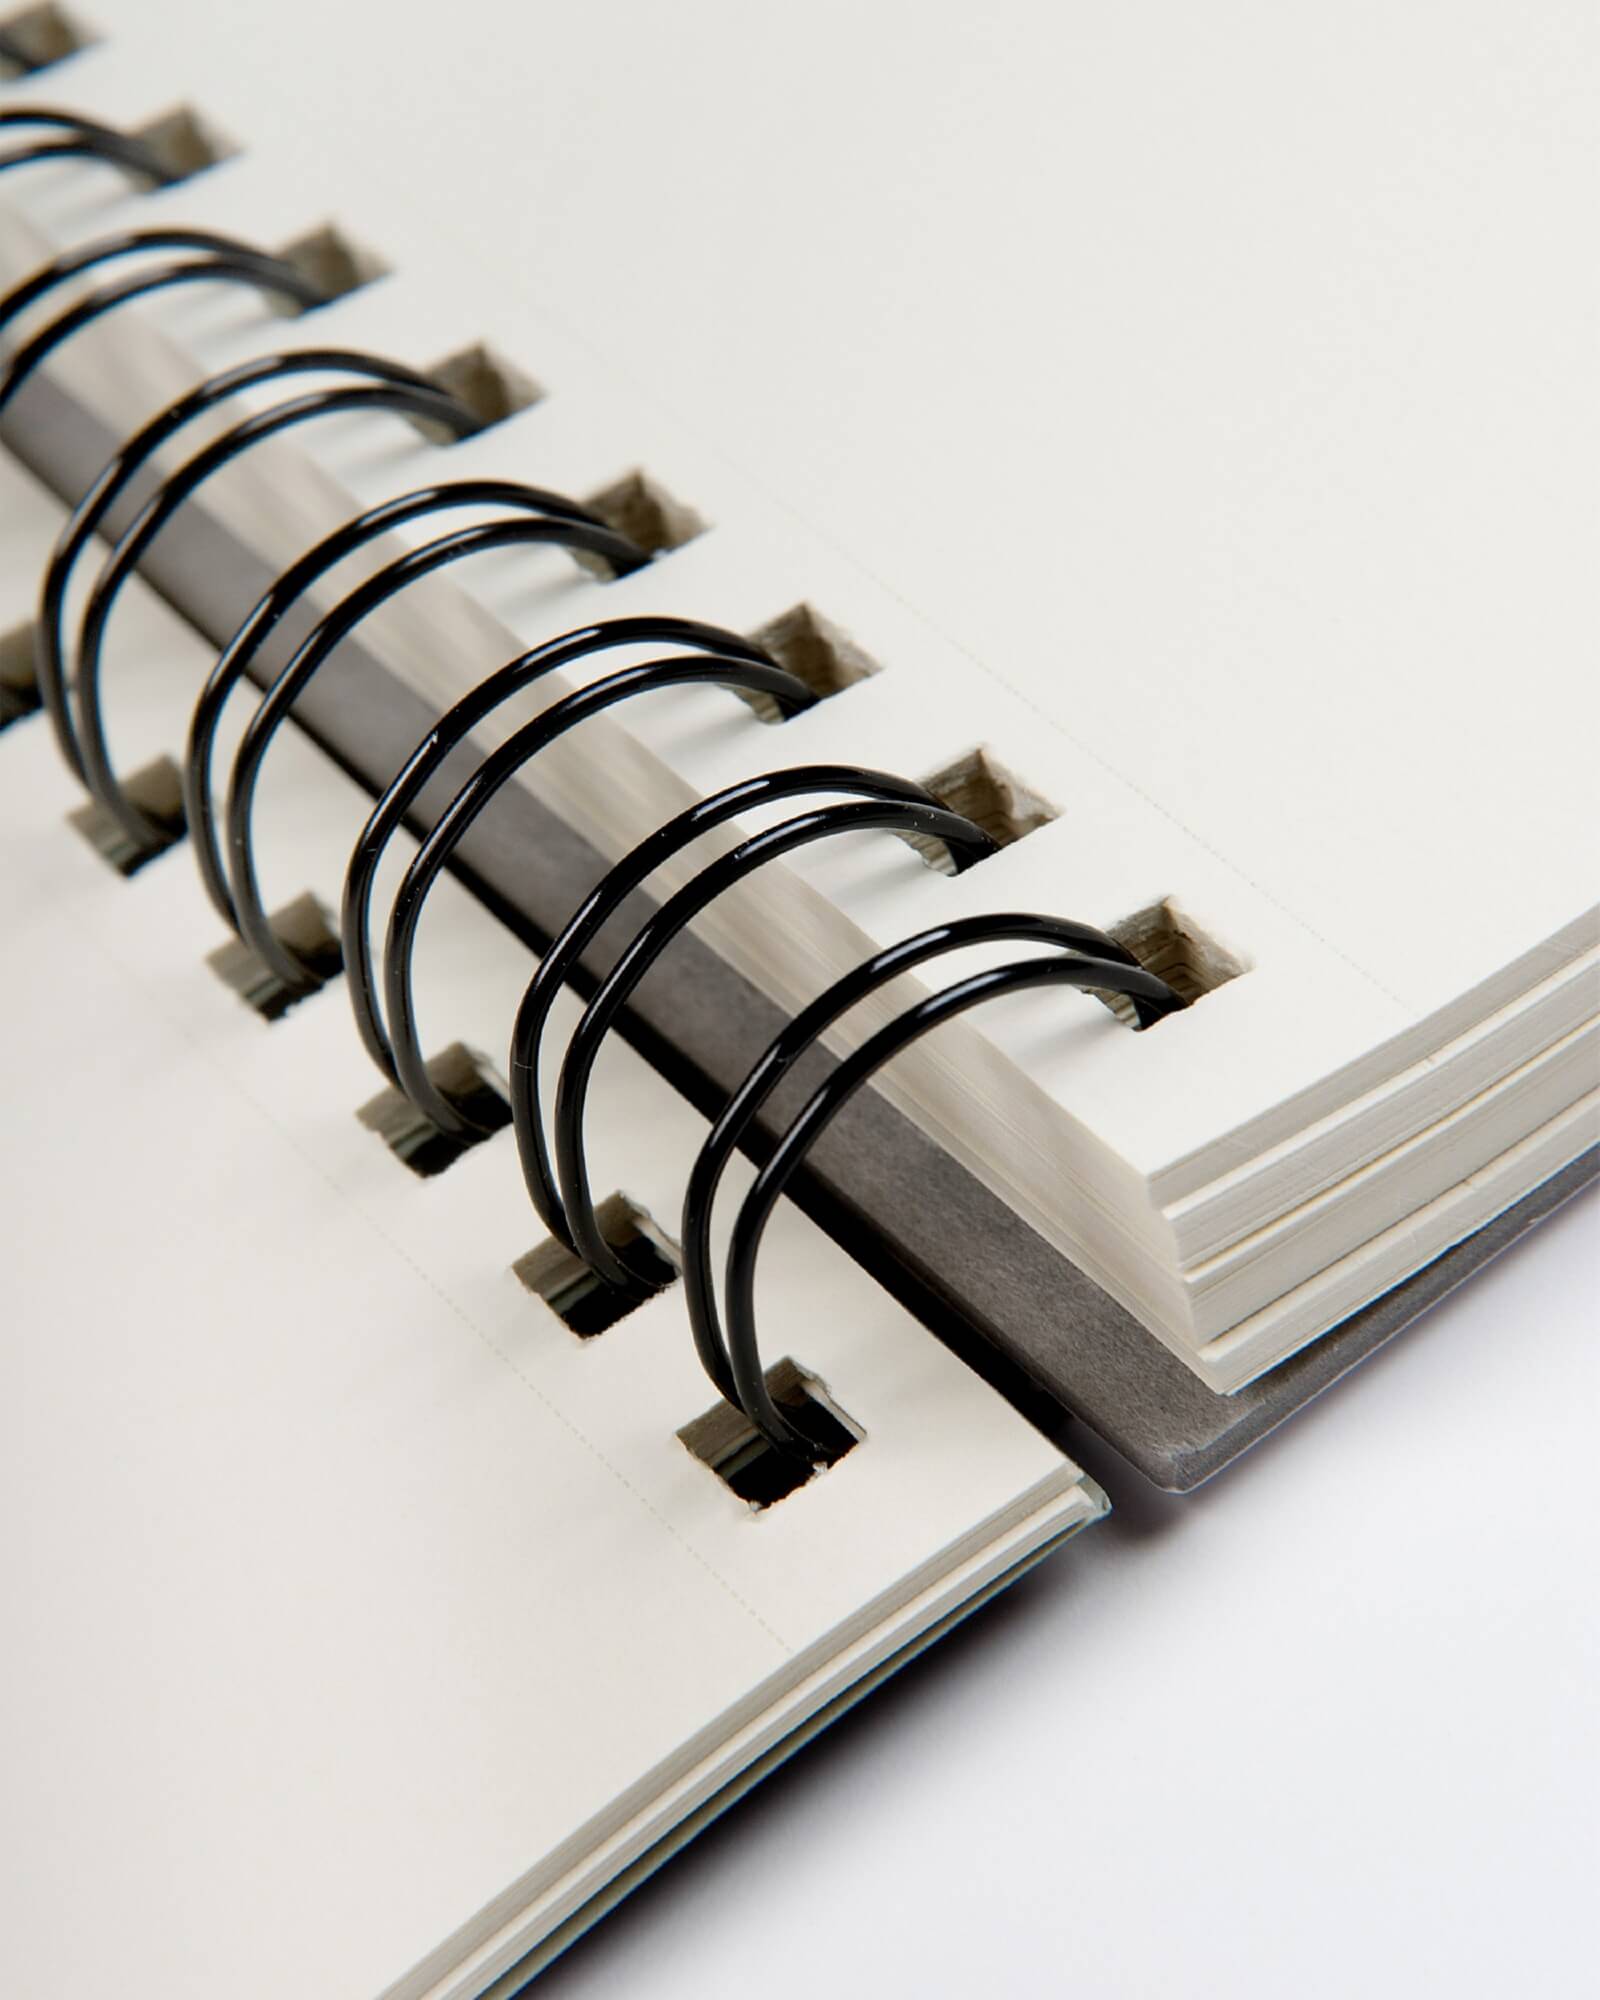 Альбом для пастели Ingres 90г/м.кв 21x29,7см белая бумага 100л спираль по короткой стороне